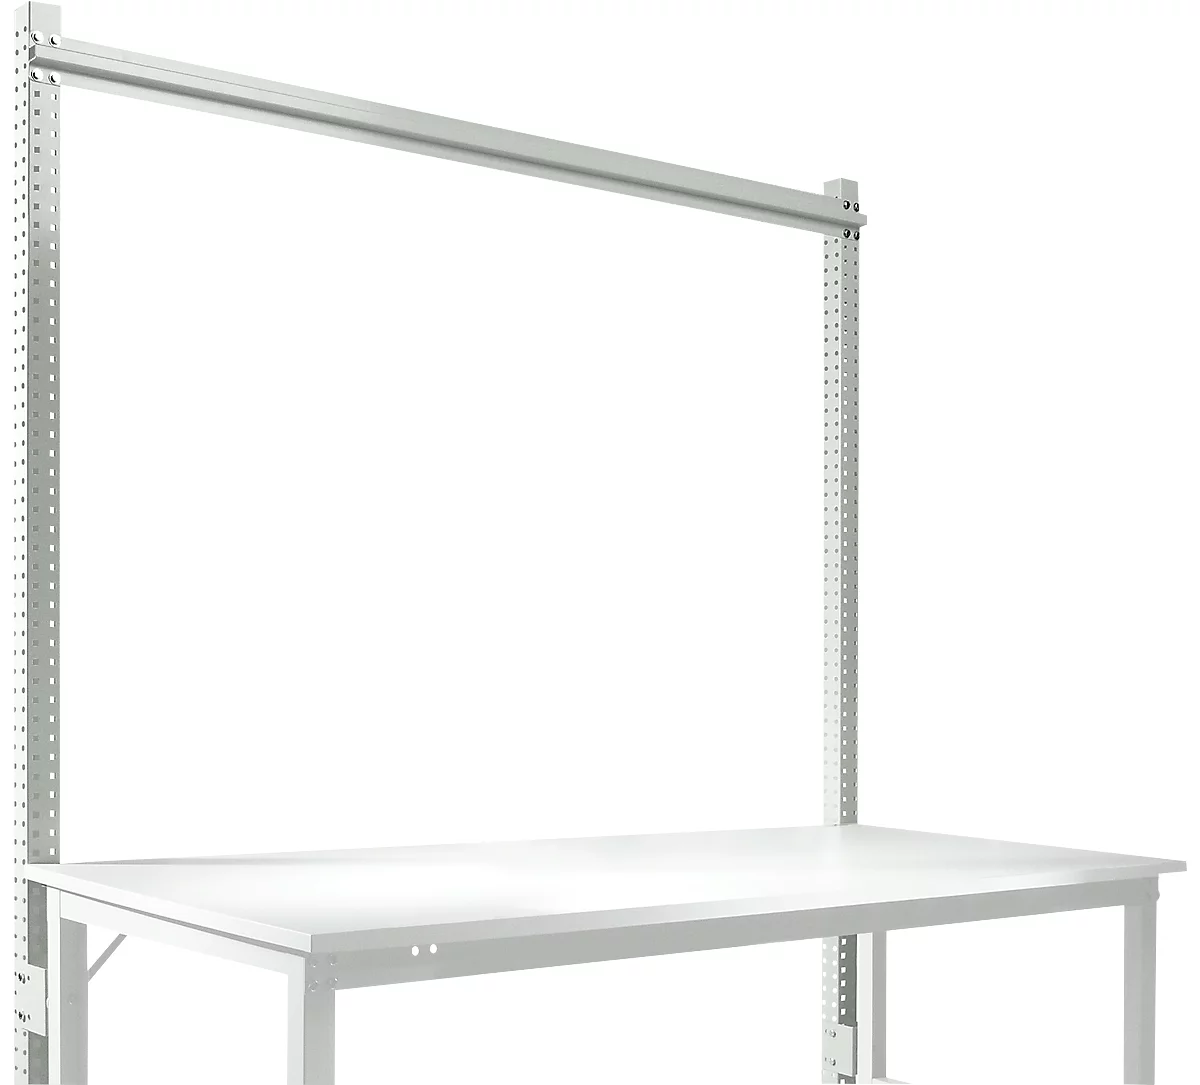 Estructura pórtica adicional, mesa básica STANDARD sistema mesa de trabajo/banco de trabajo UNIVERSAL/PROFI, 1750 mm, gris luminoso